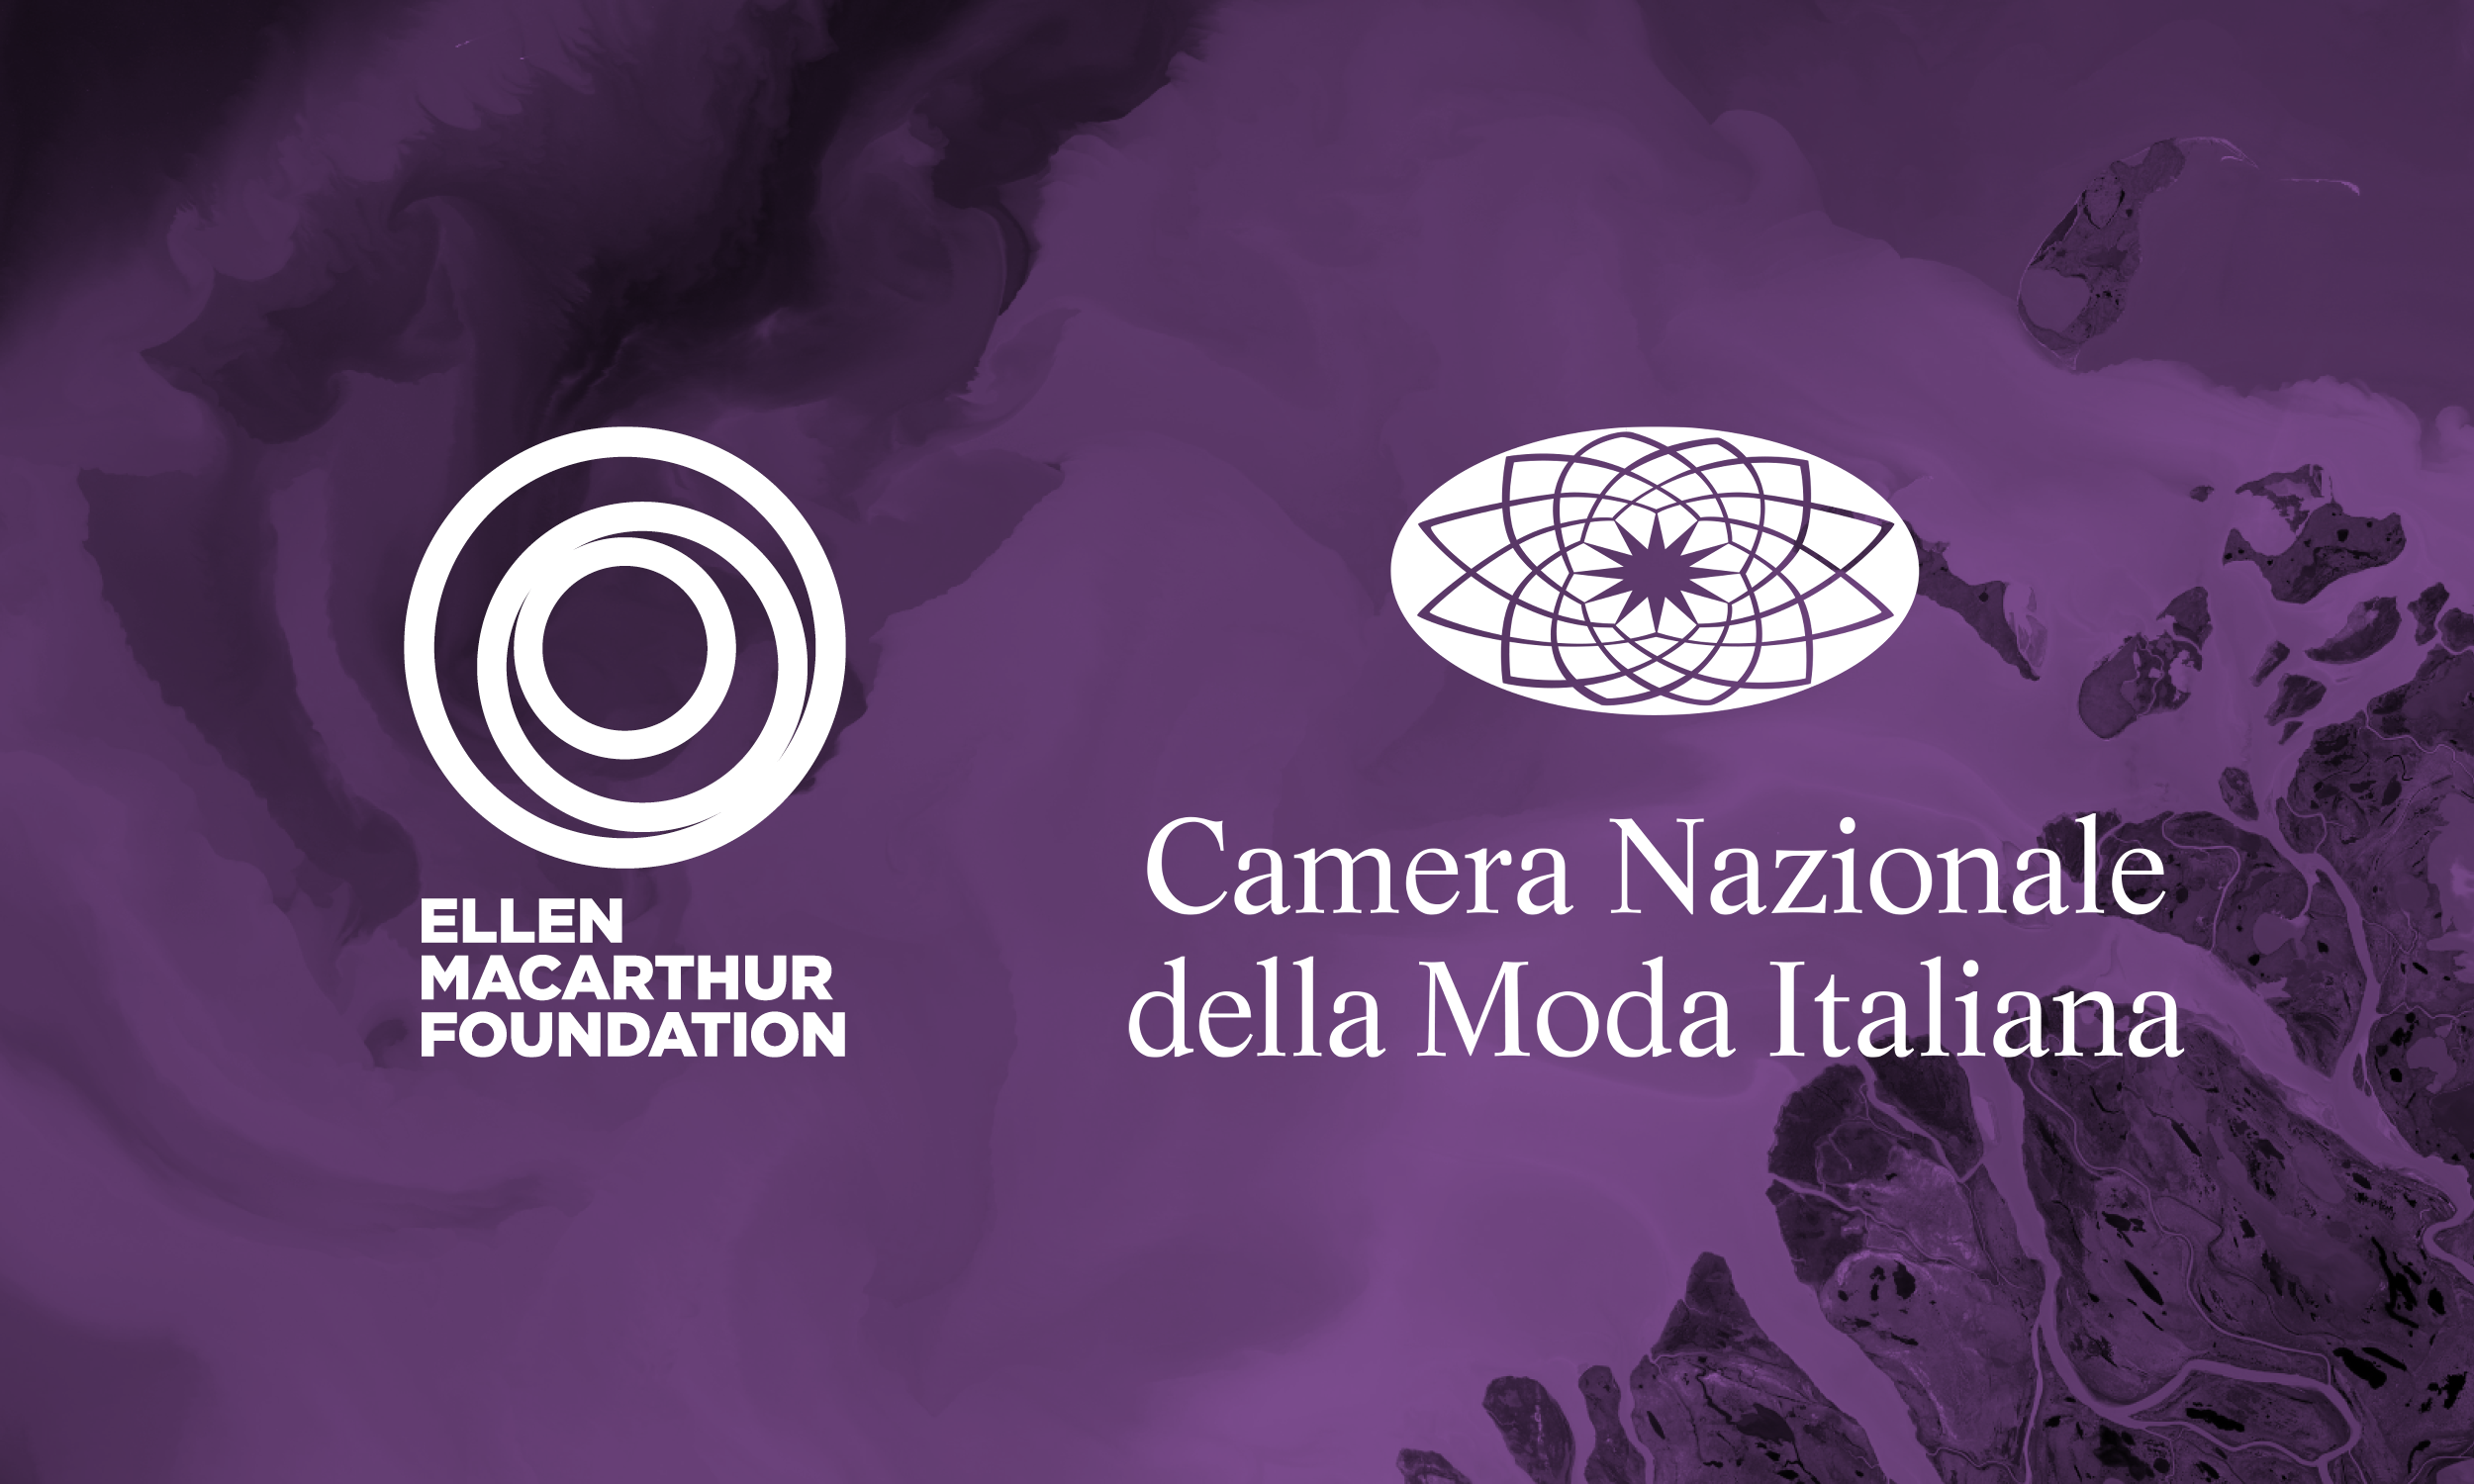 Abstract purple background with Ellen MacArthur Foundation logo and Camera Nazionale della Moda Italiana logo